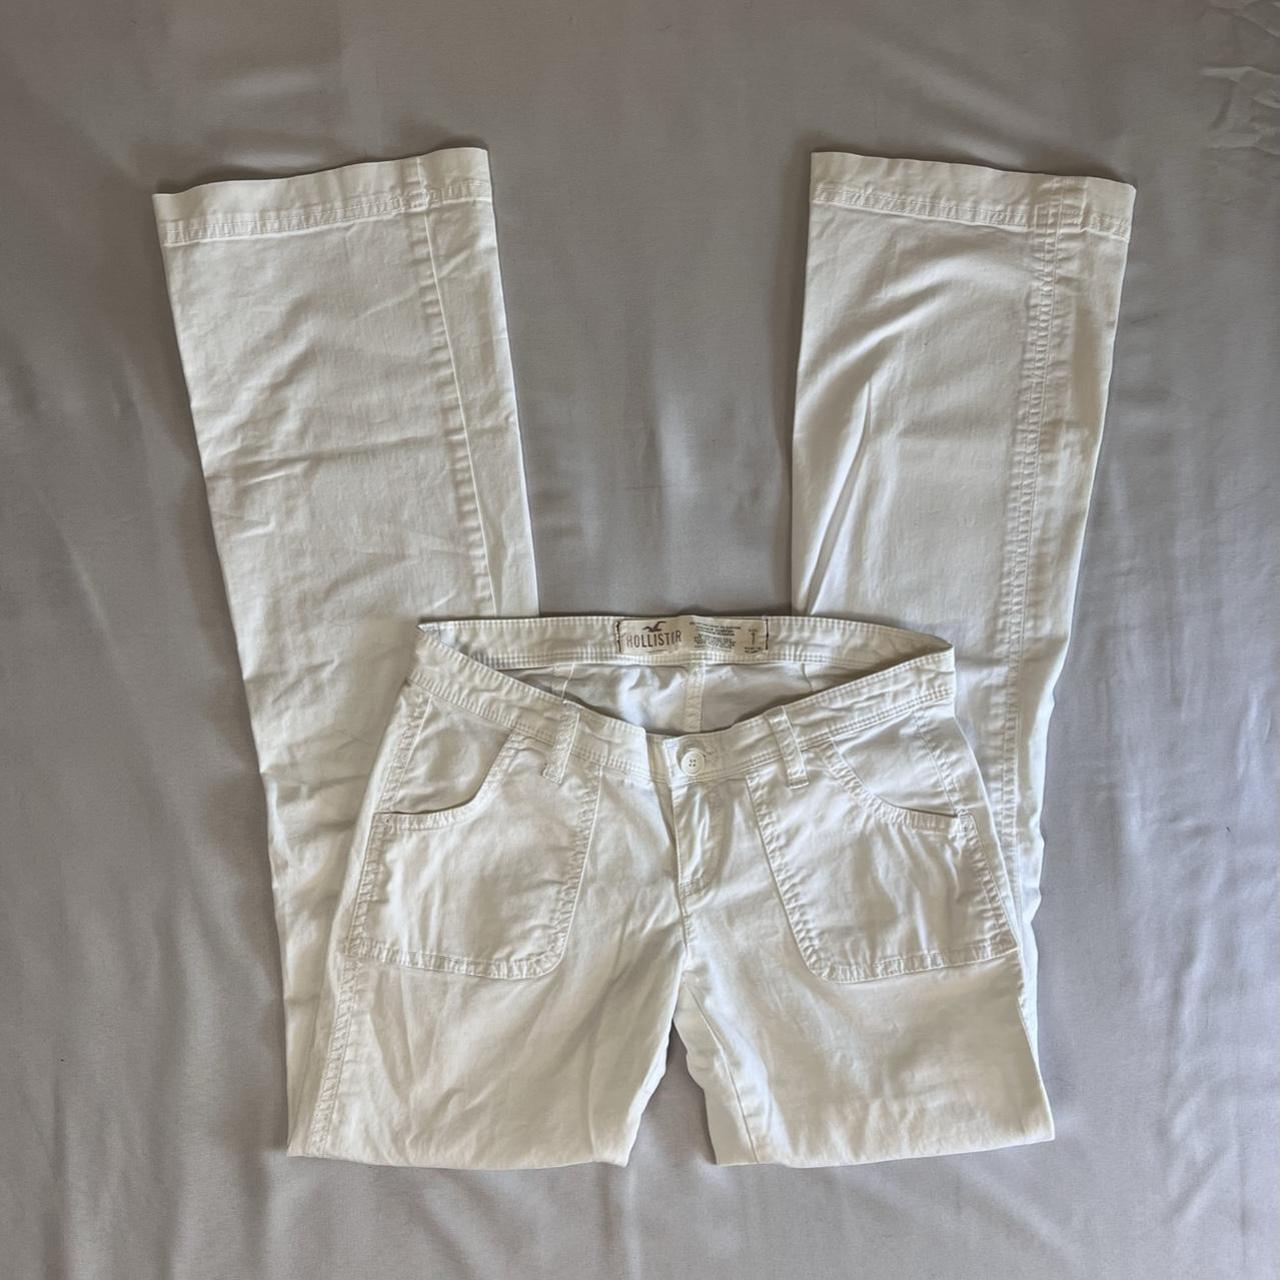 Escada sport white linen pants No flaws but worn - Depop